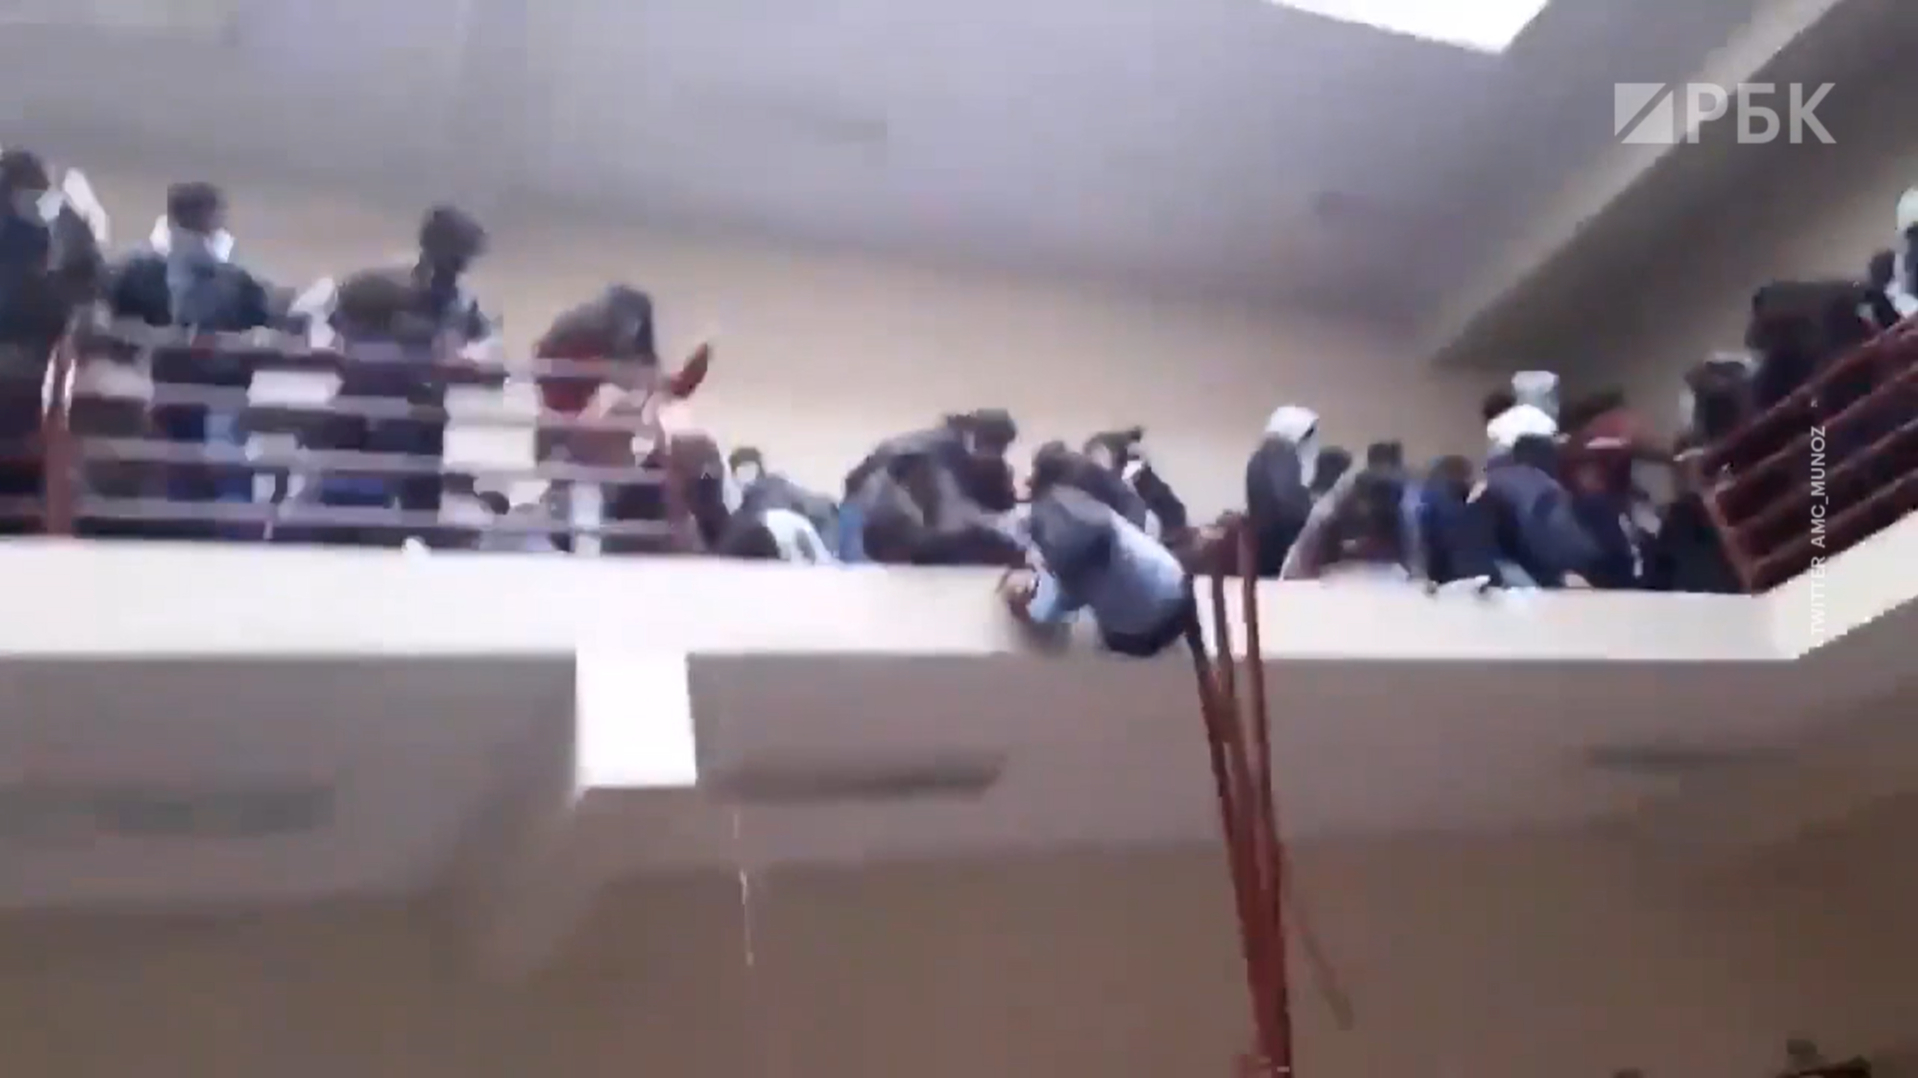 Отчего упала. Гибель студентов в боливийском университете. Обрушились перила в учебном заведении. Человек падает с трибуны.